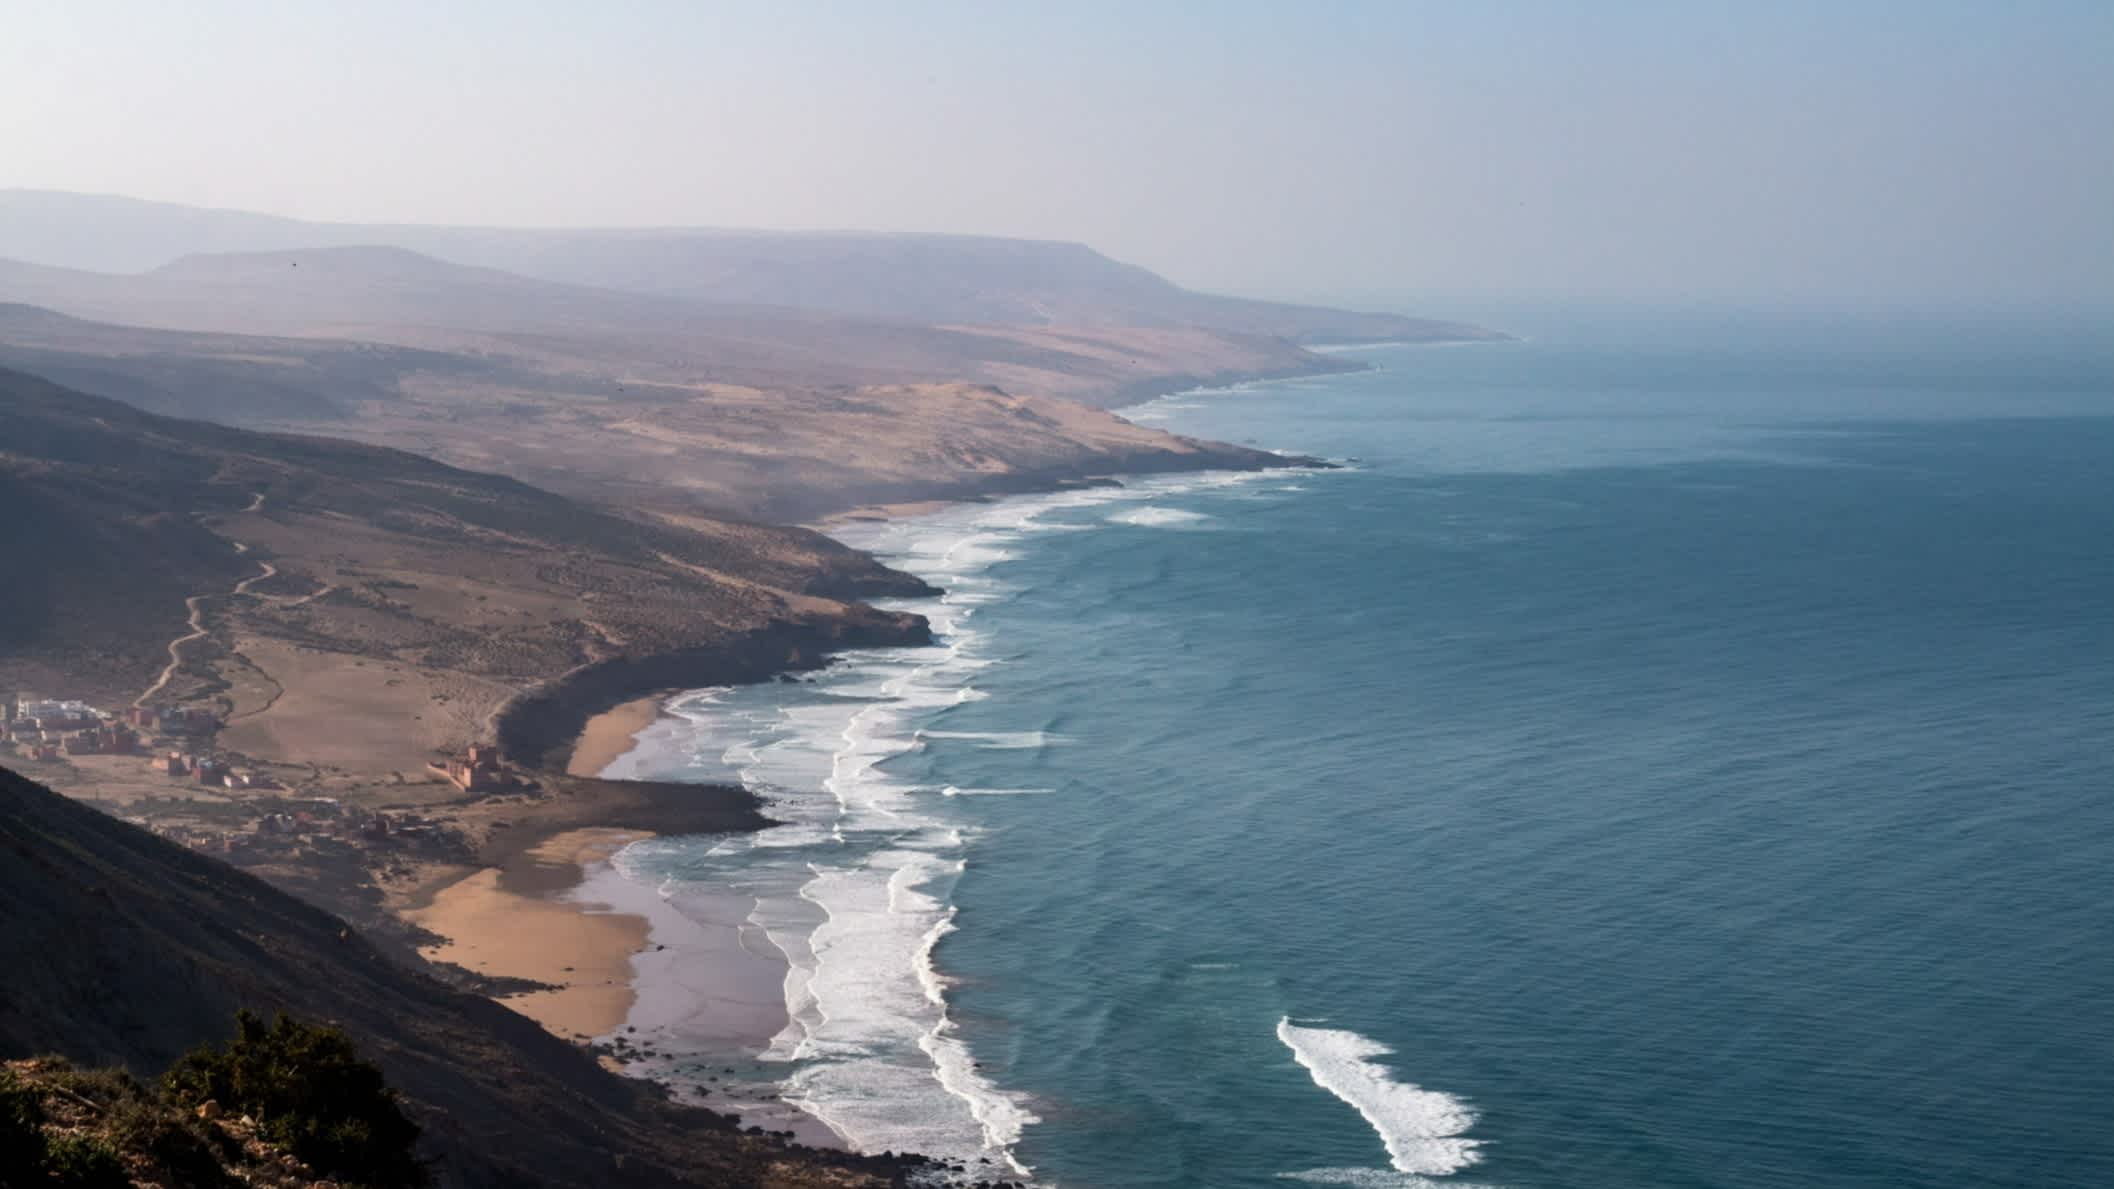 Vue aérienne de la côte près d'Imsouane, Maroc

